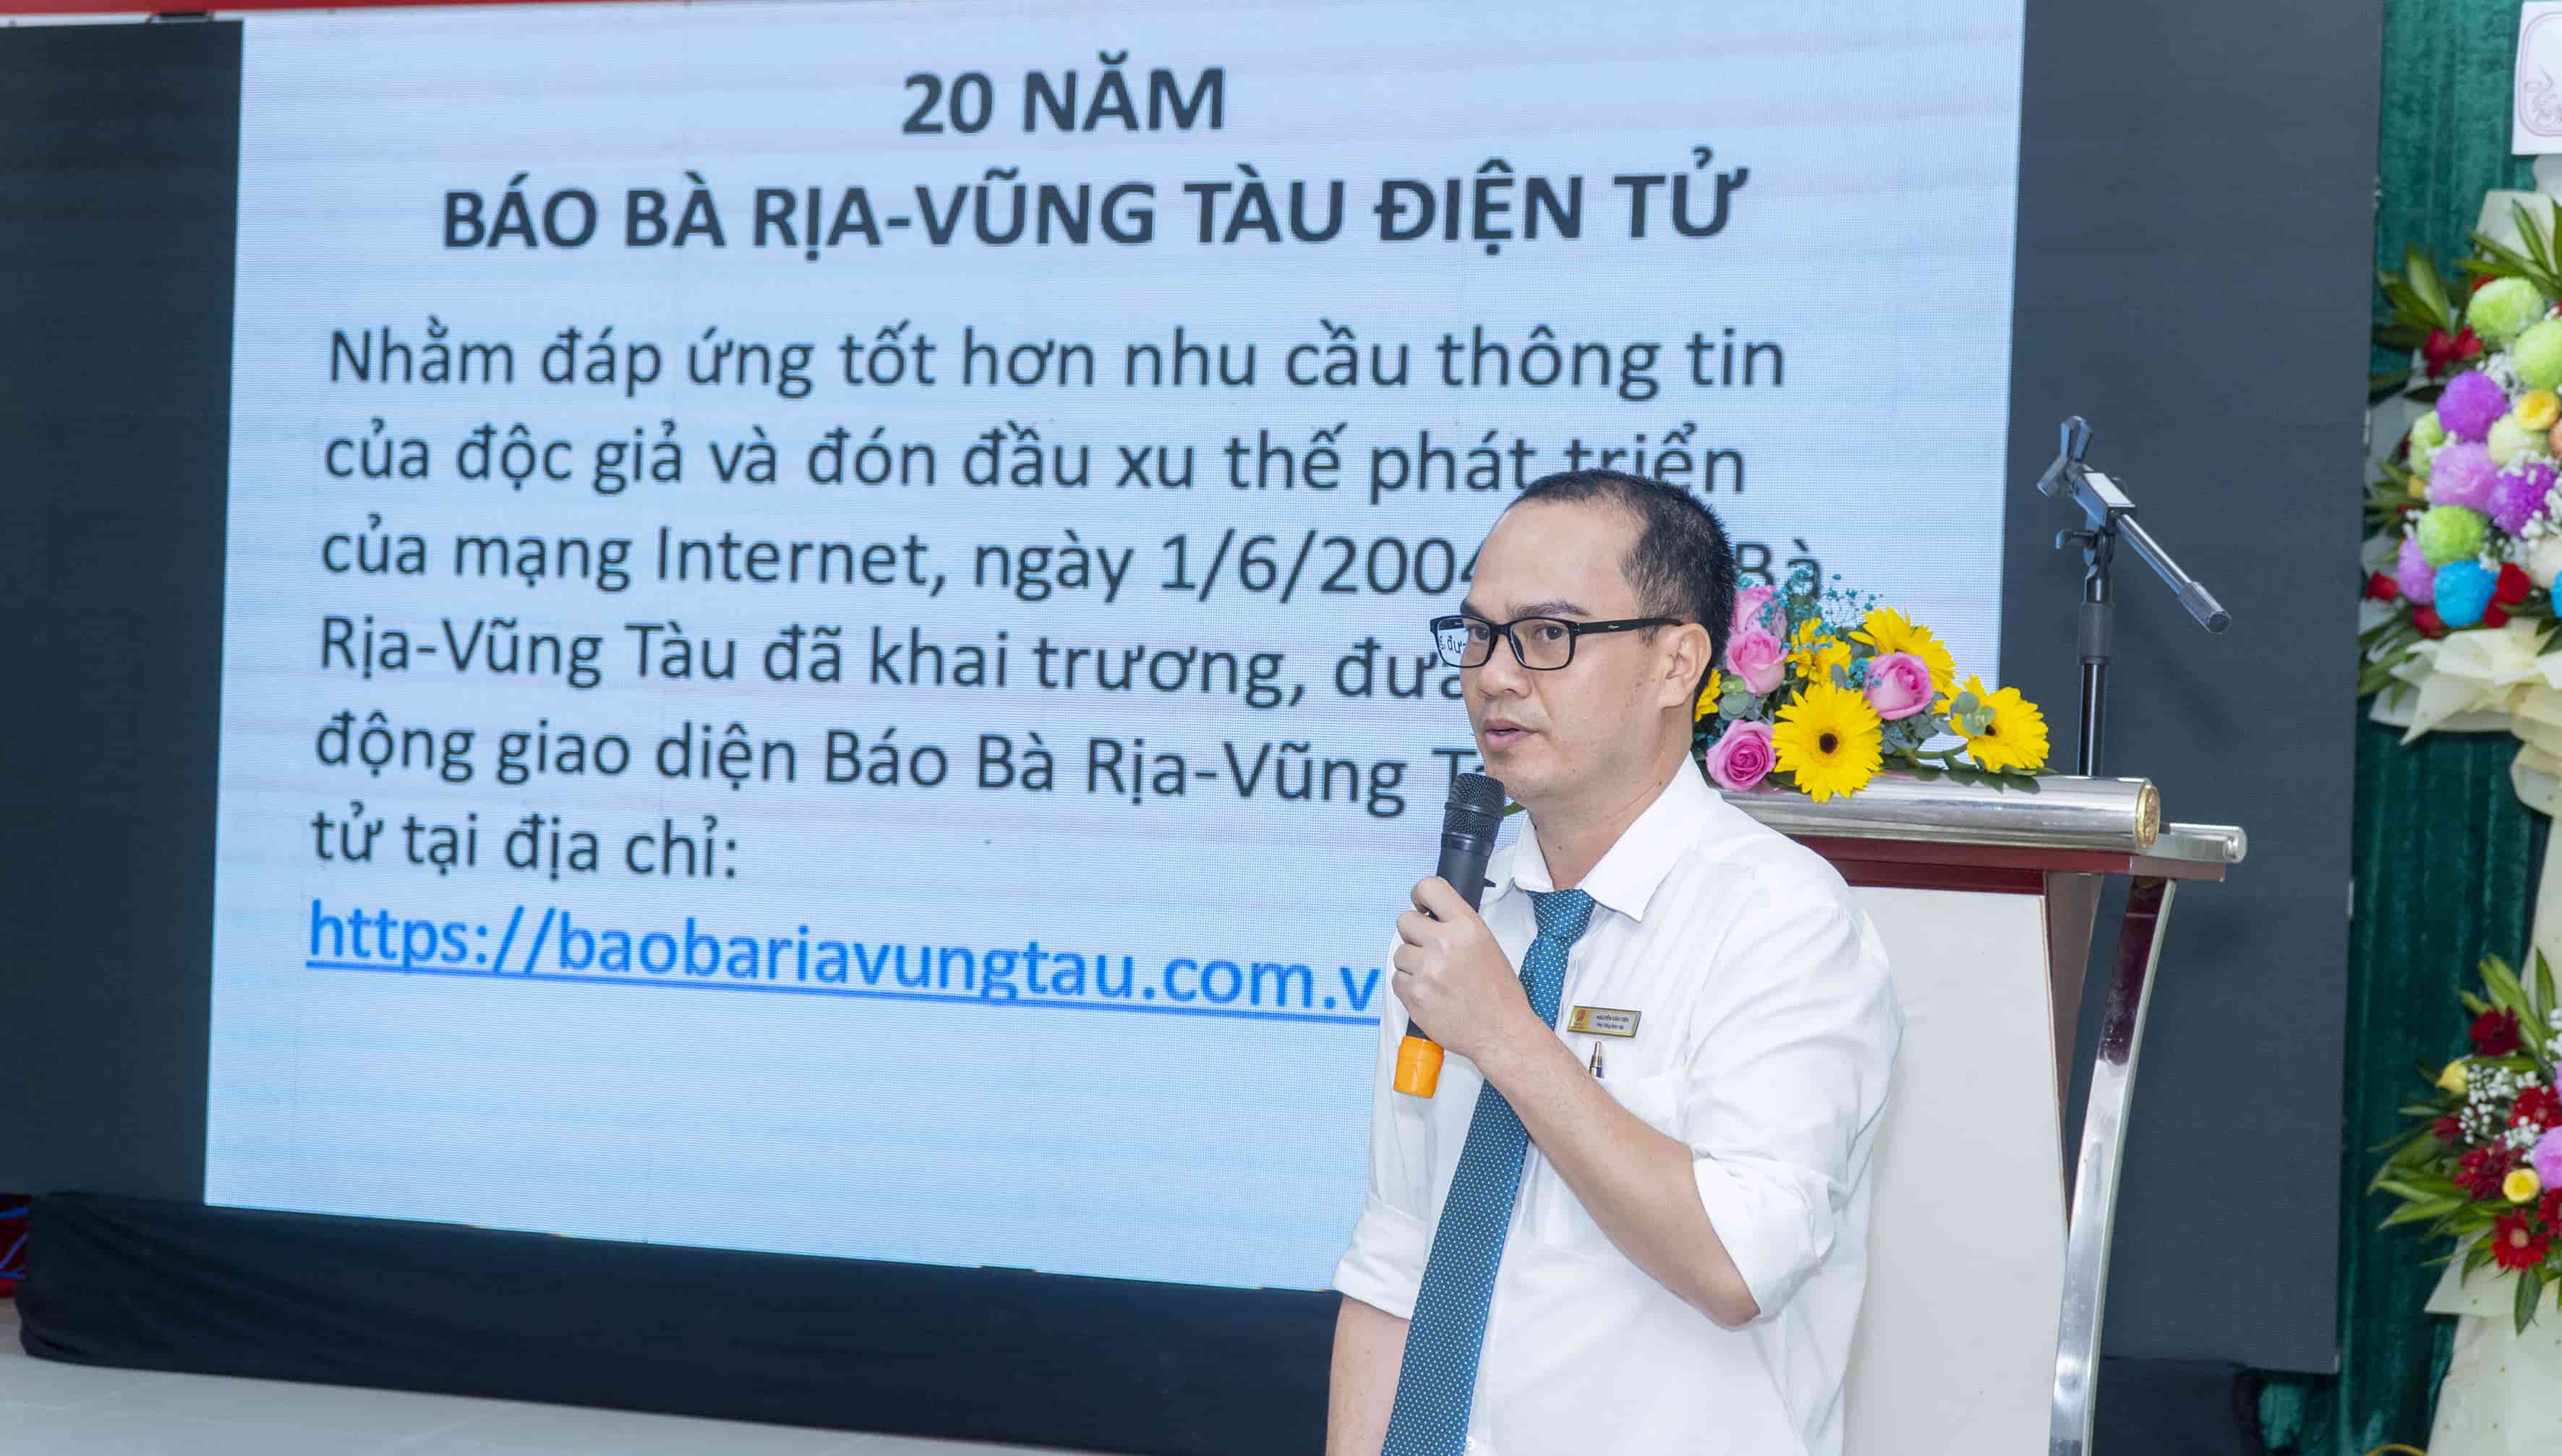 Ông Nguyễn Văn Tiện, Phó Tổng Biên tập Báo Bà Rịa - Vũng Tàu phát biểu tại buổi lễ.